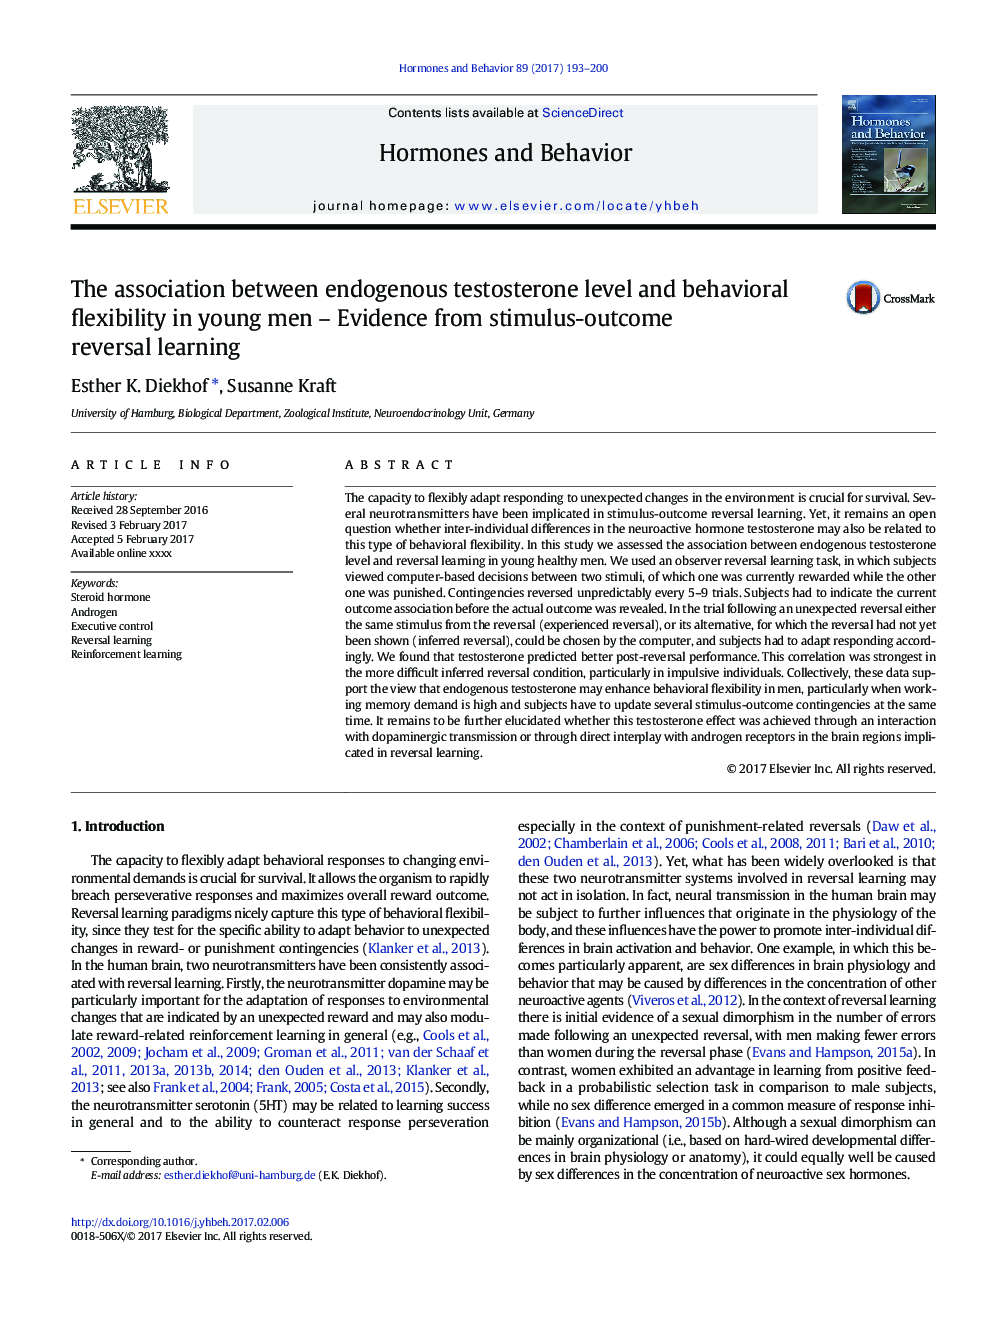 ارتباط بین سطح تستوسترون درونی و انعطاف پذیری رفتاری در مردان جوان - شواهد حاصل از یادگیری معکوس و نتیجه معکوس 